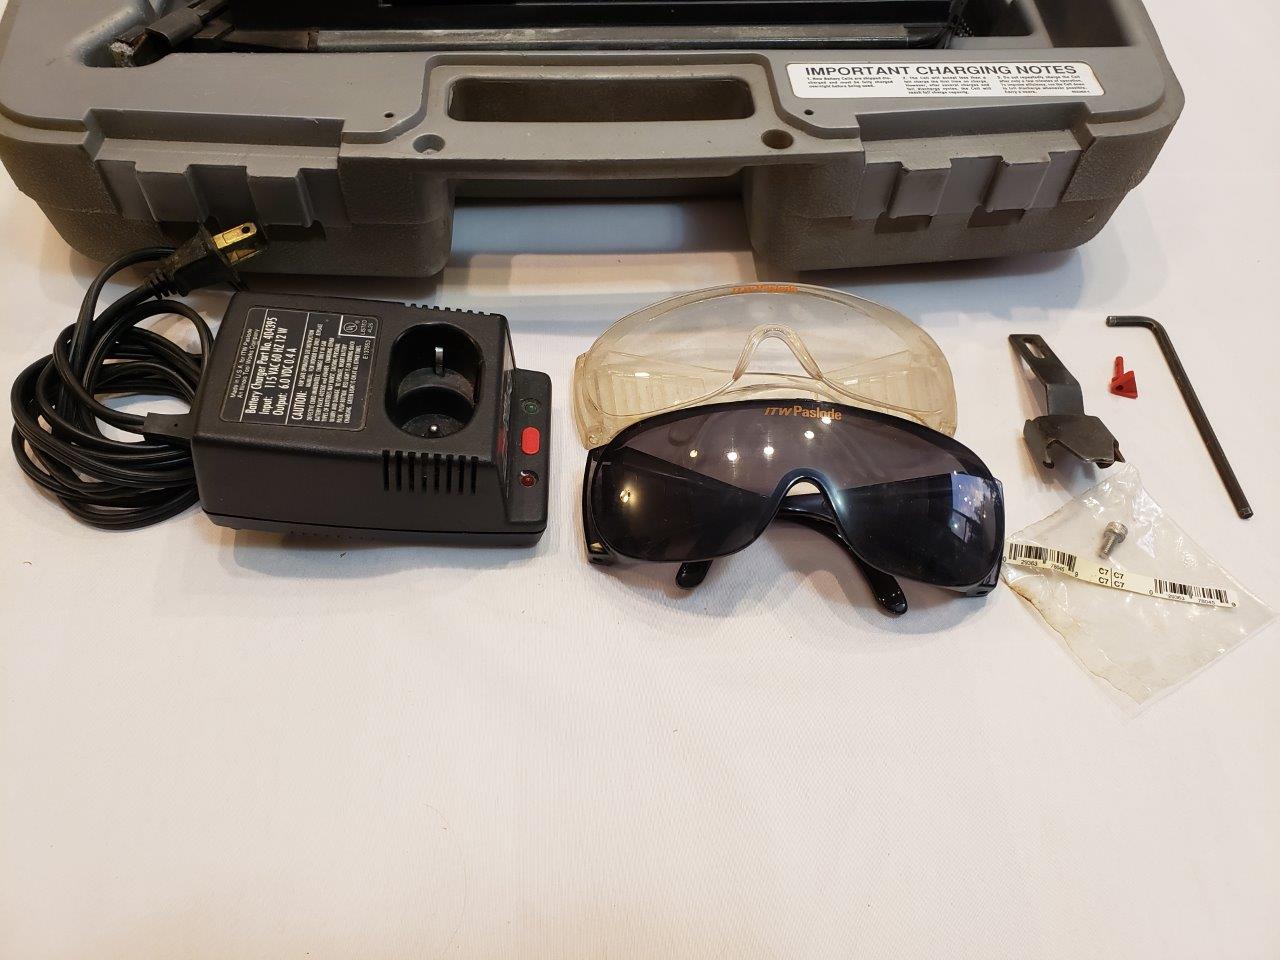 ITW Paslode Impulse Model IM325 Framing Nailer, Gun Hard Case, Charger, Eye Protection IM-325